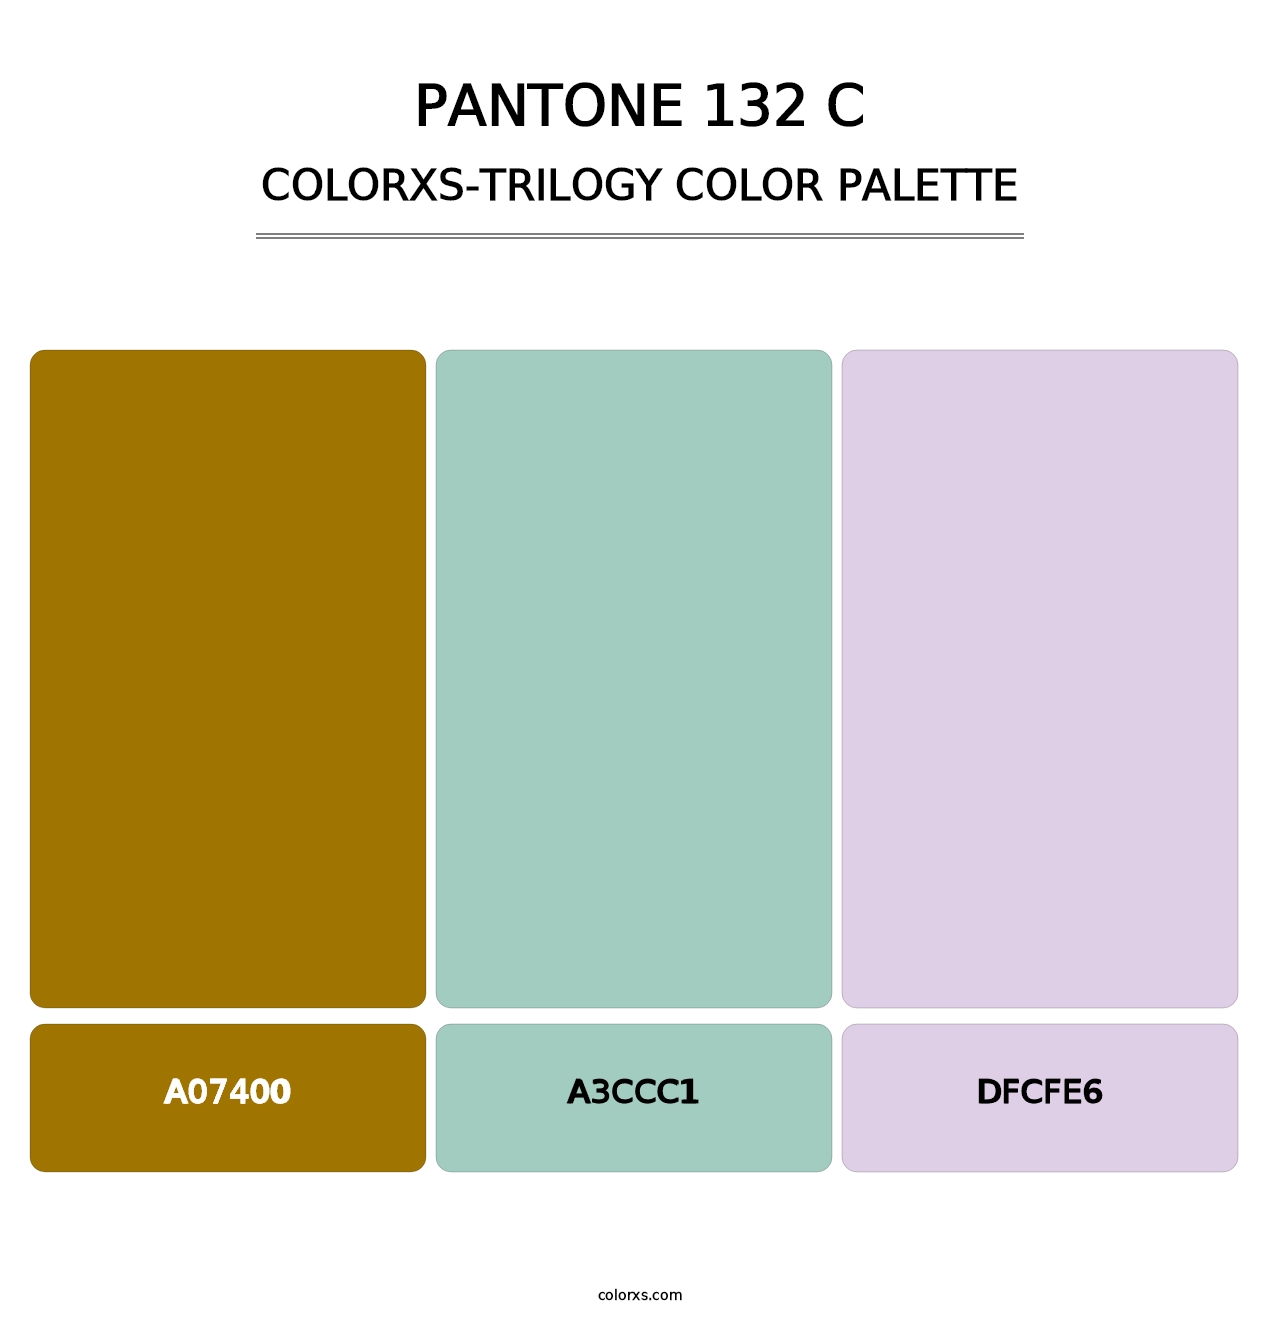 PANTONE 132 C - Colorxs Trilogy Palette